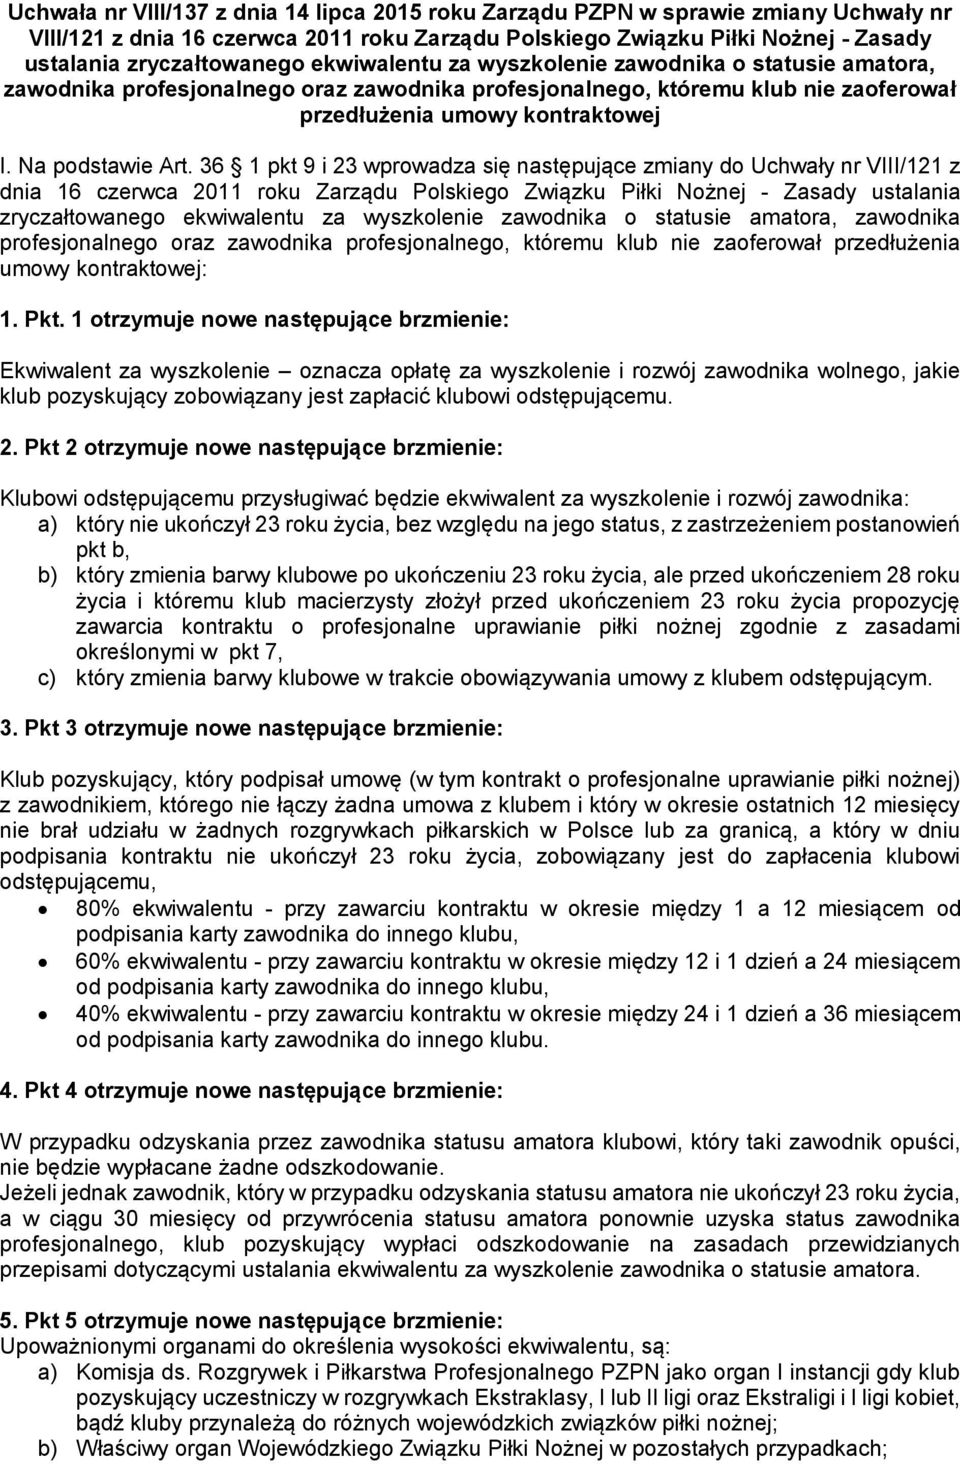 36 1 pkt 9 i 23 wprowadza się następujące zmiany do Uchwały nr VIII/121 z dnia 16 czerwca 2011 roku Zarządu Polskiego Związku Piłki Nożnej - Zasady ustalania zryczałtowanego ekwiwalentu za